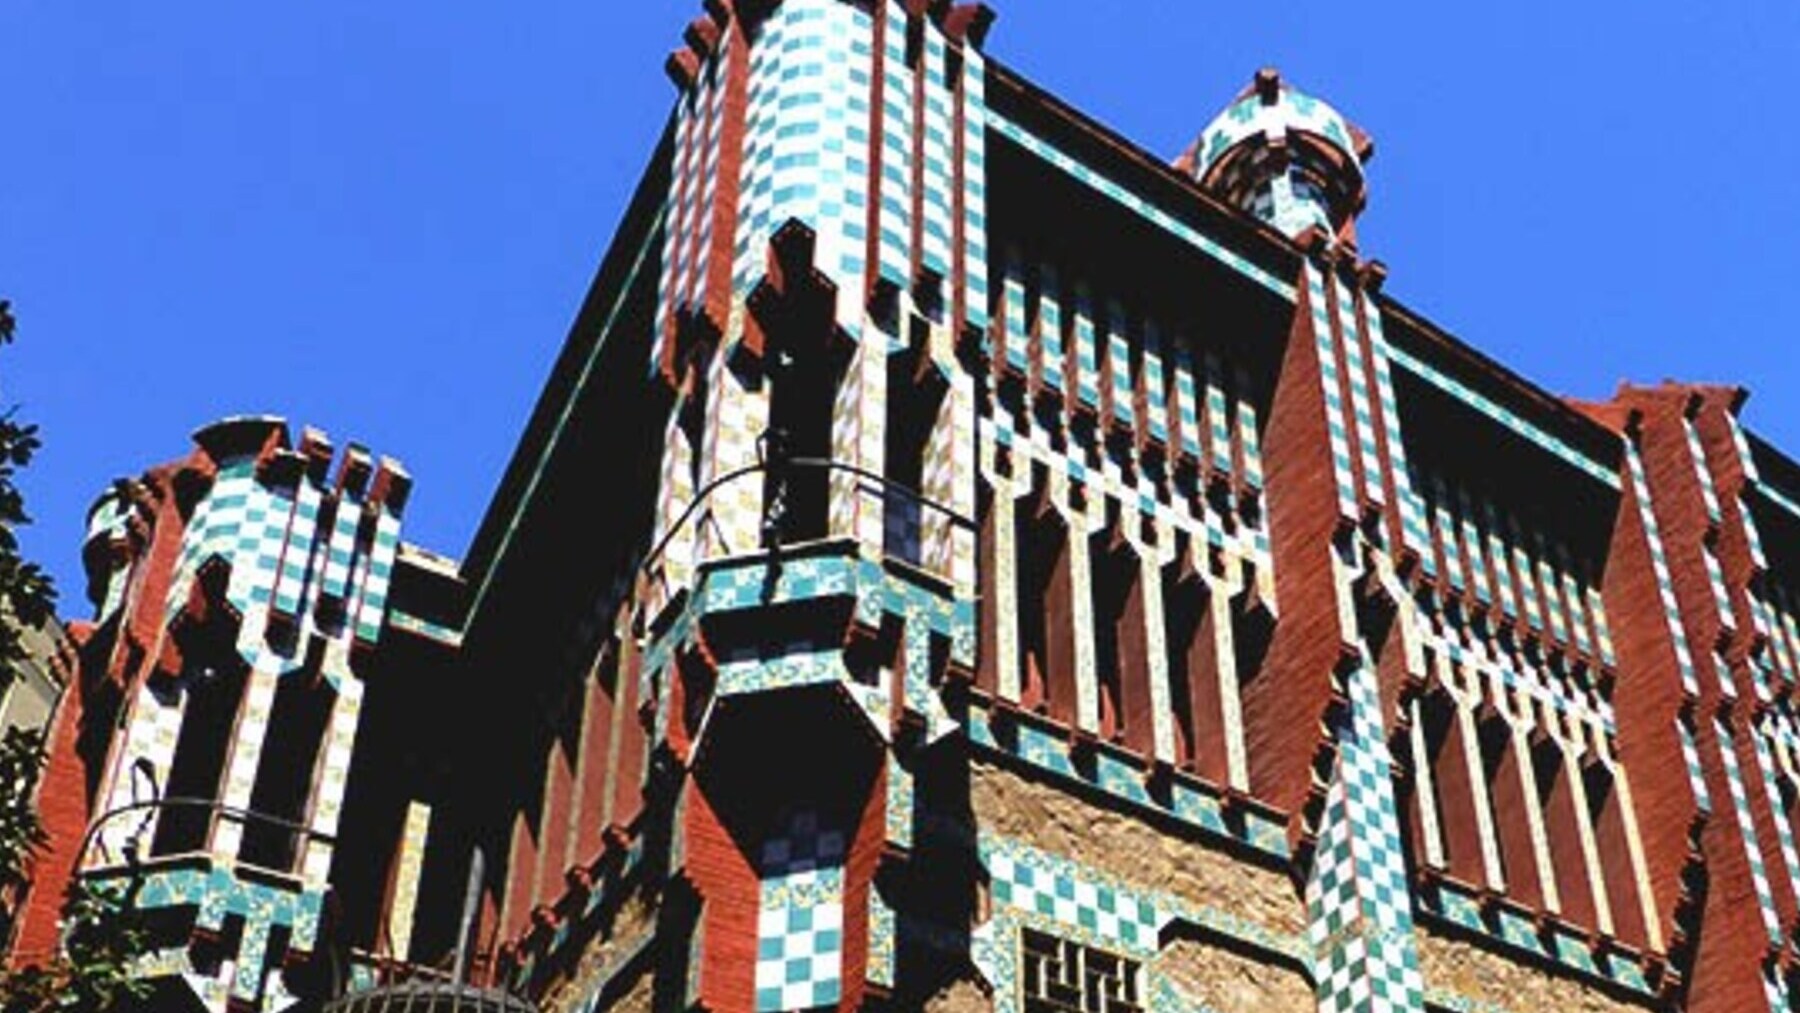 Así puedes ganar una noche en la casa de Gaudí por 1 euro